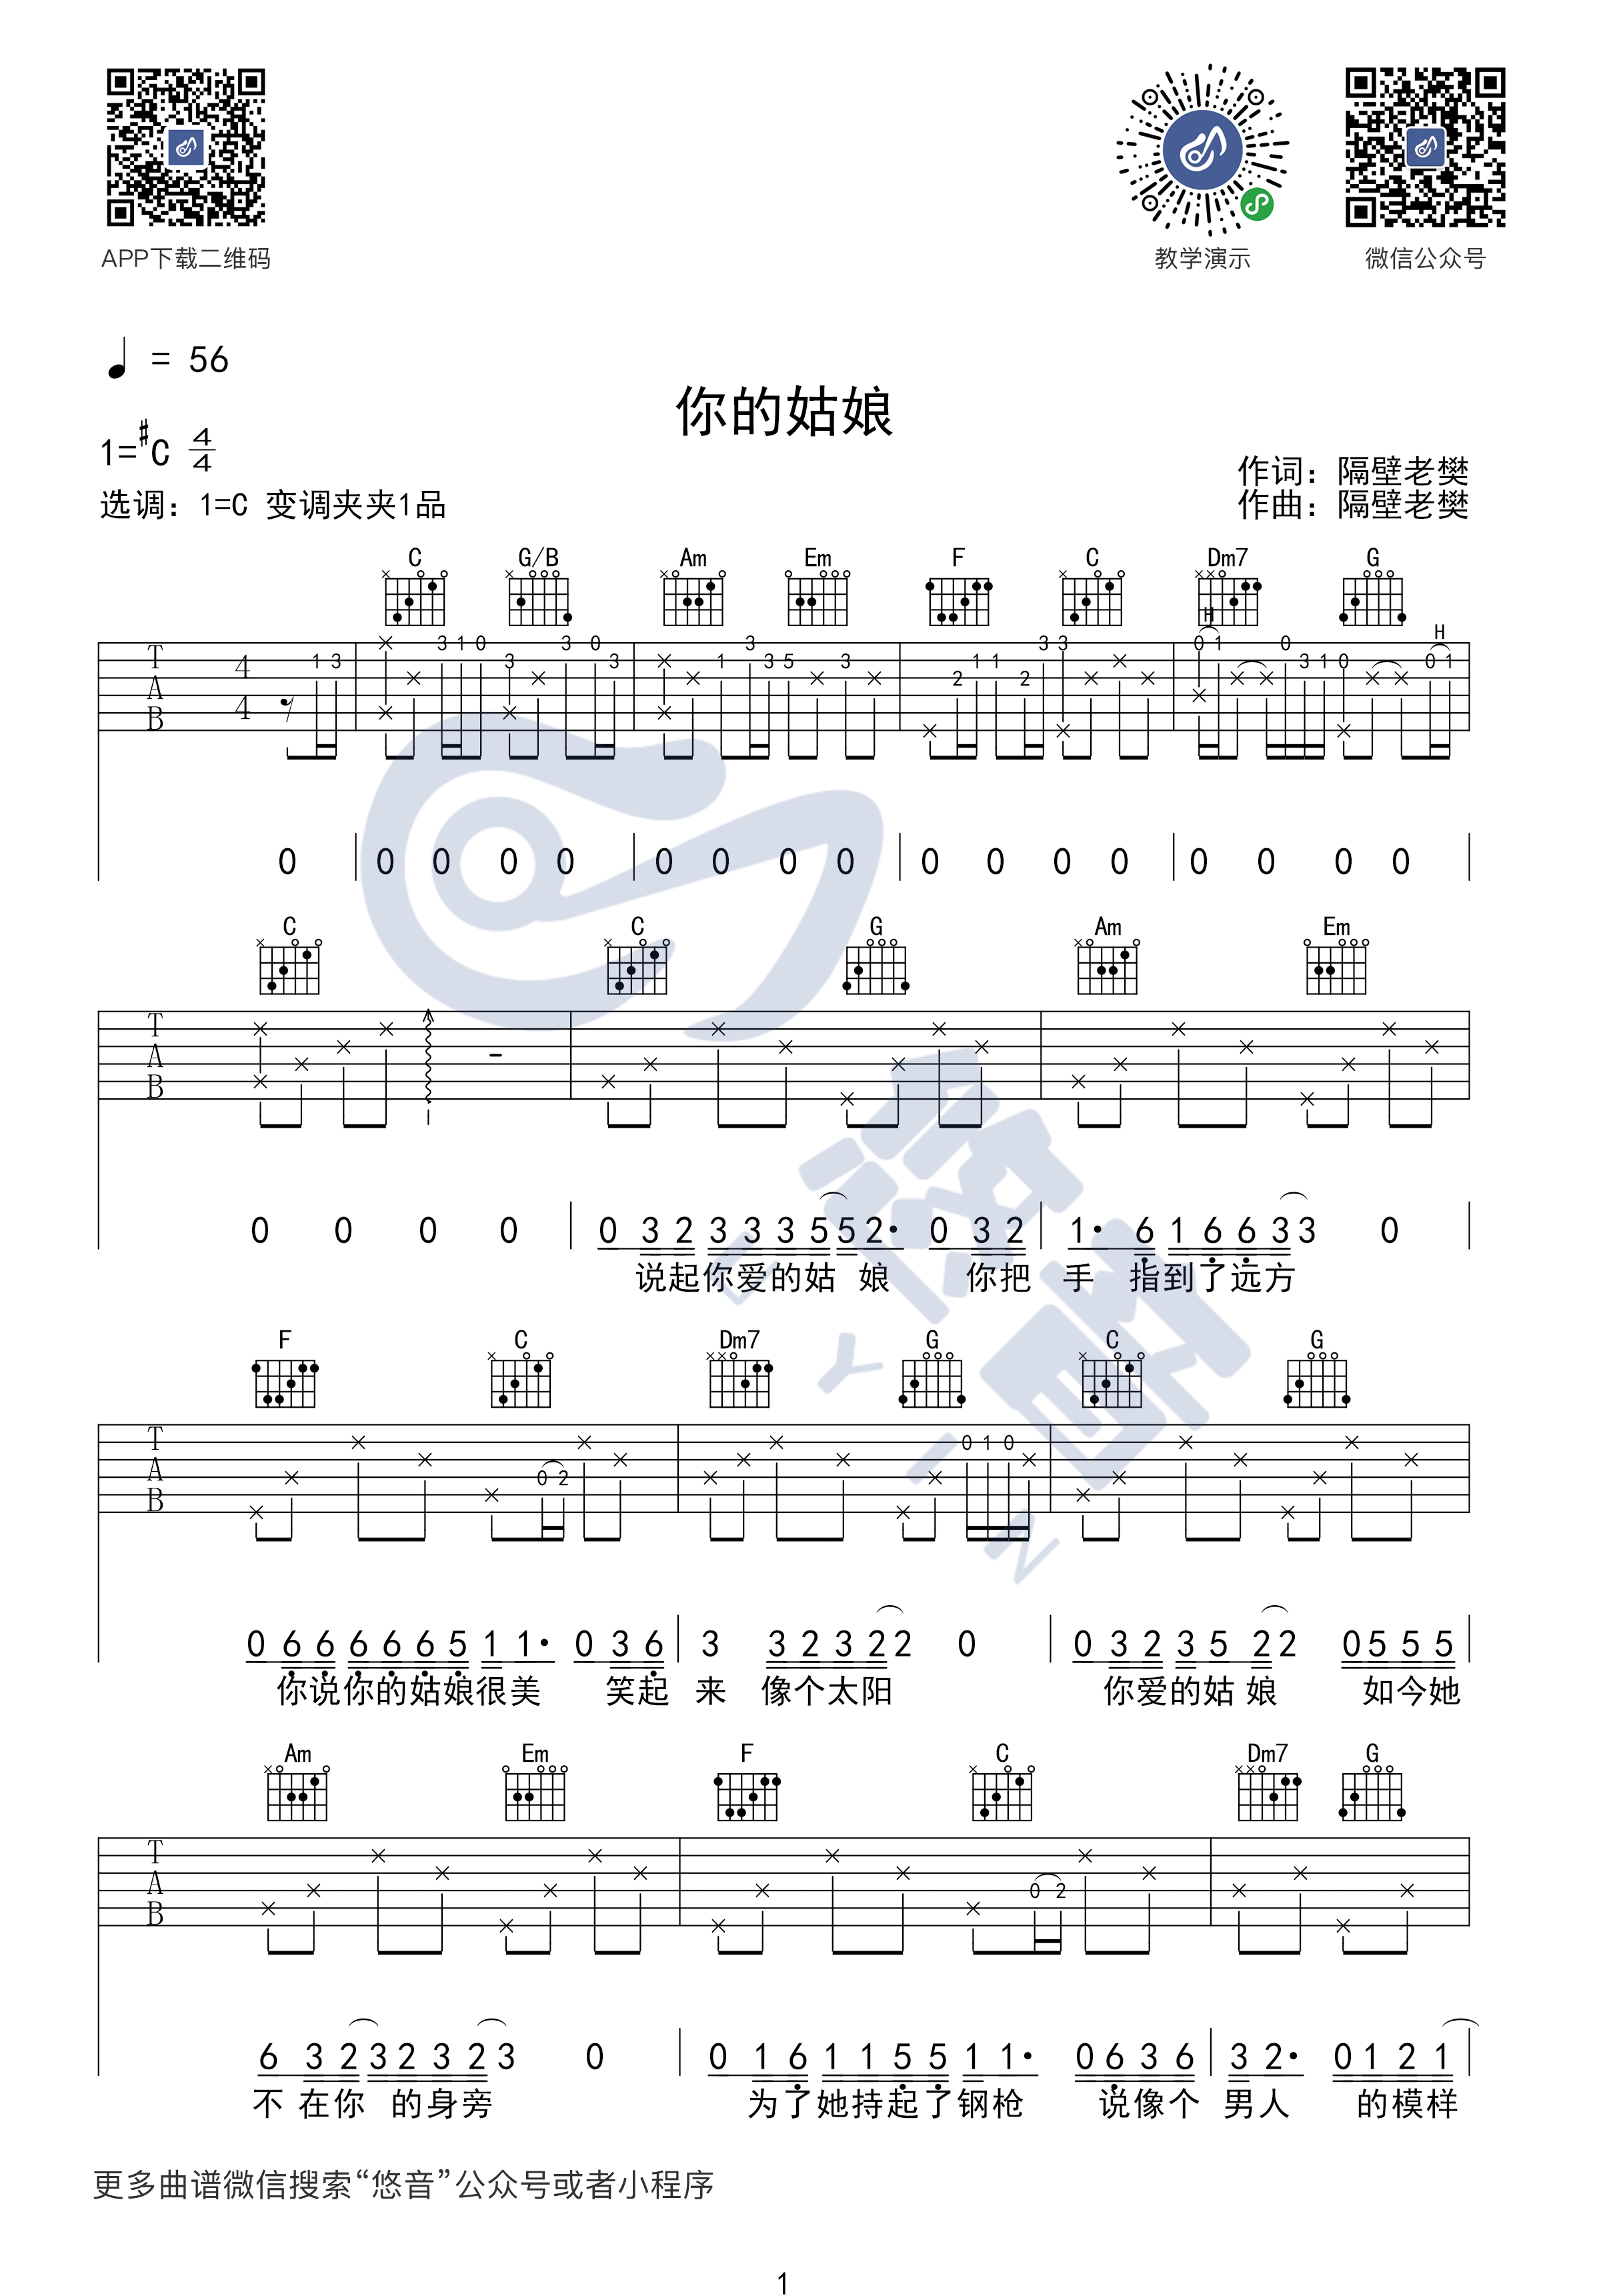 隔壁老樊 - 你的姑娘(音艺吉他专家弹唱教学:第一季第30集) [弹唱 伴奏 教学] 吉他谱